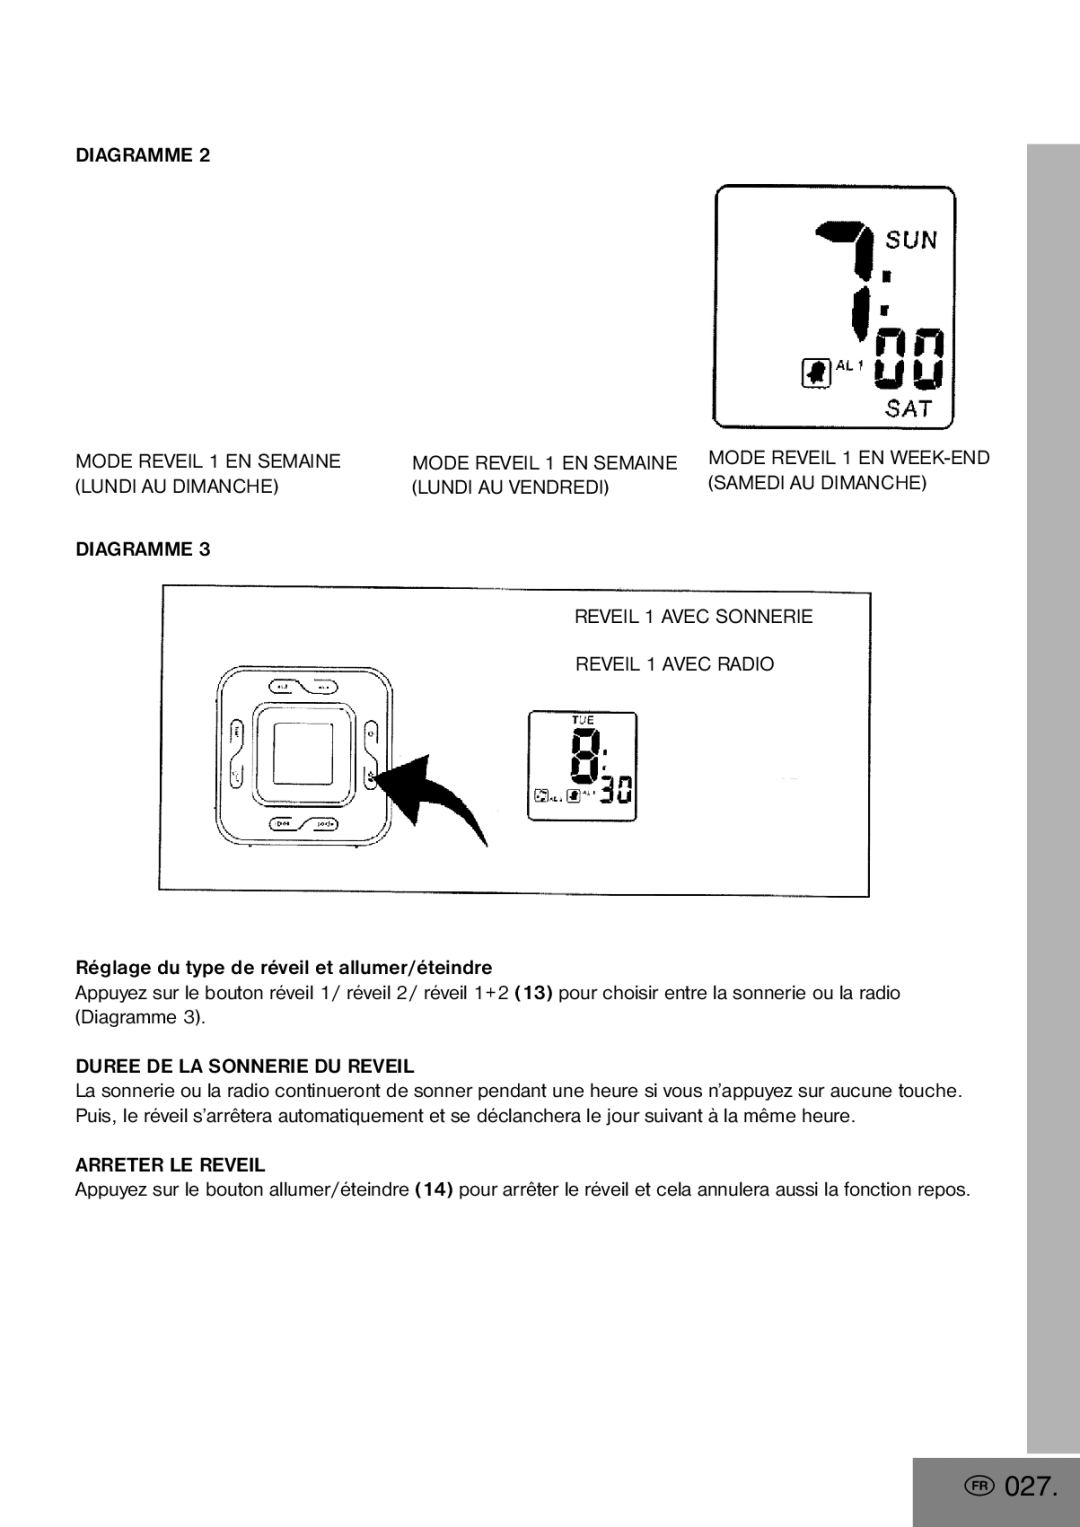 Elta 4556 manual 027, Diagramme Mode Reveil 1 EN Semaine, Duree DE LA Sonnerie DU Reveil, Arreter LE Reveil 